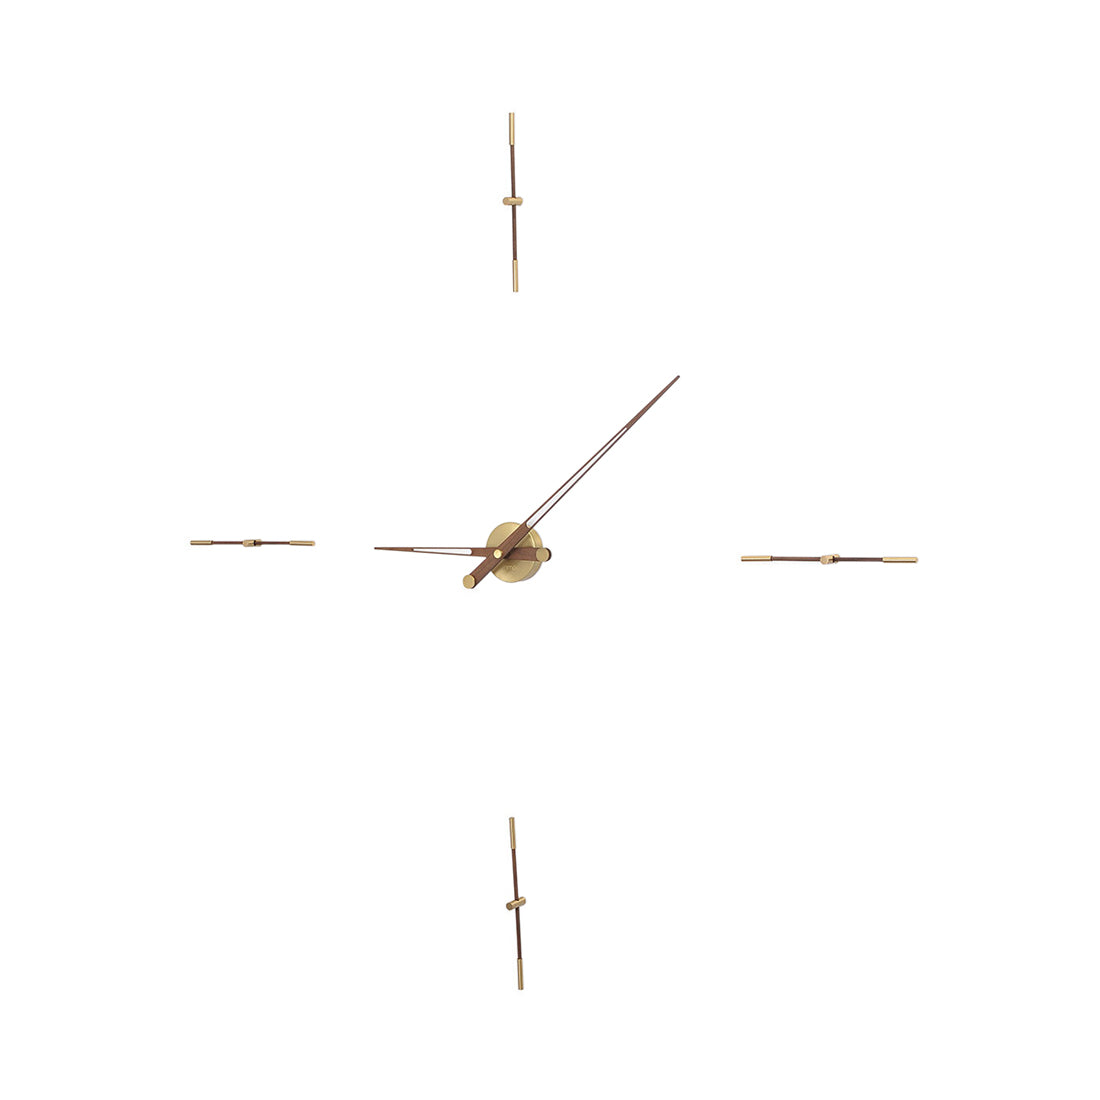 Merlín Wall Clock: 61